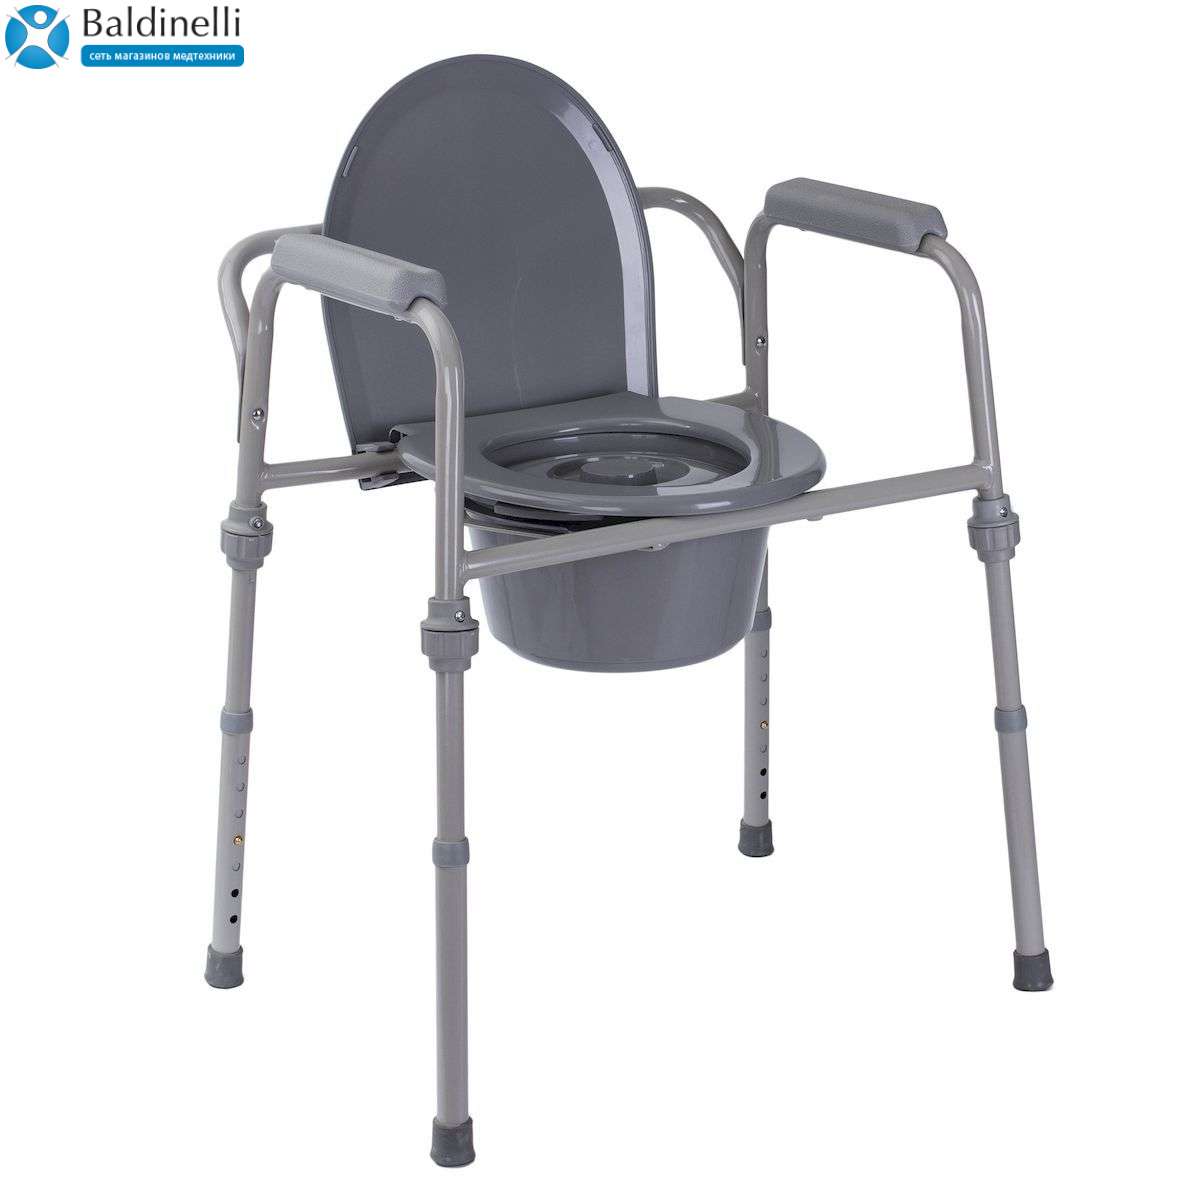 Стандартный стул-туалет OSD-RB-2105K